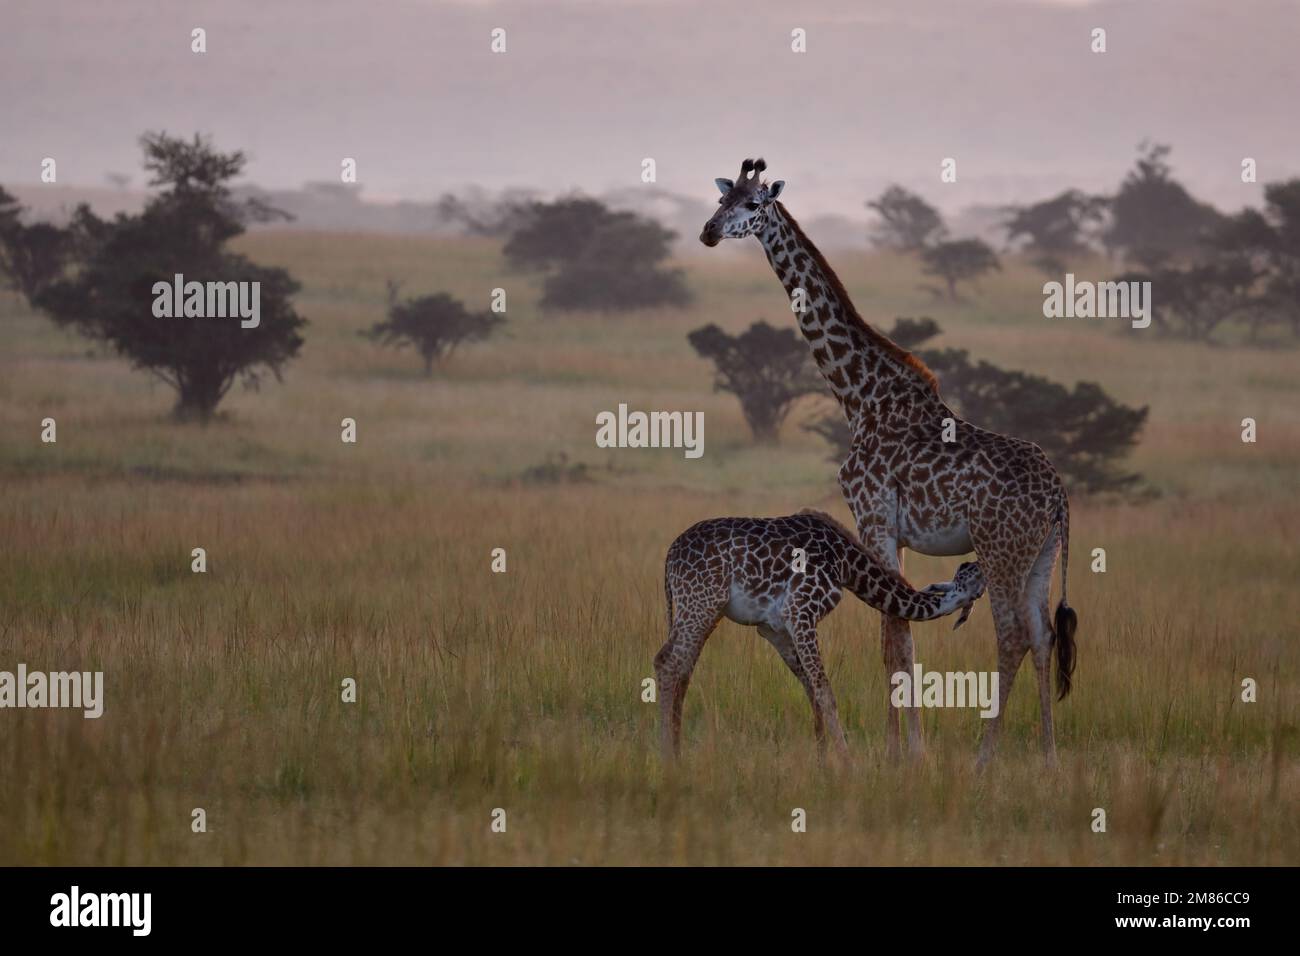 Mutter Giraffe mit ihrem neugeborenen Baby, die kleine saugt am Euter der Mutter, gute Laune - Kenia, Masai Mara, Olare Motorogi Conservancy Stockfoto